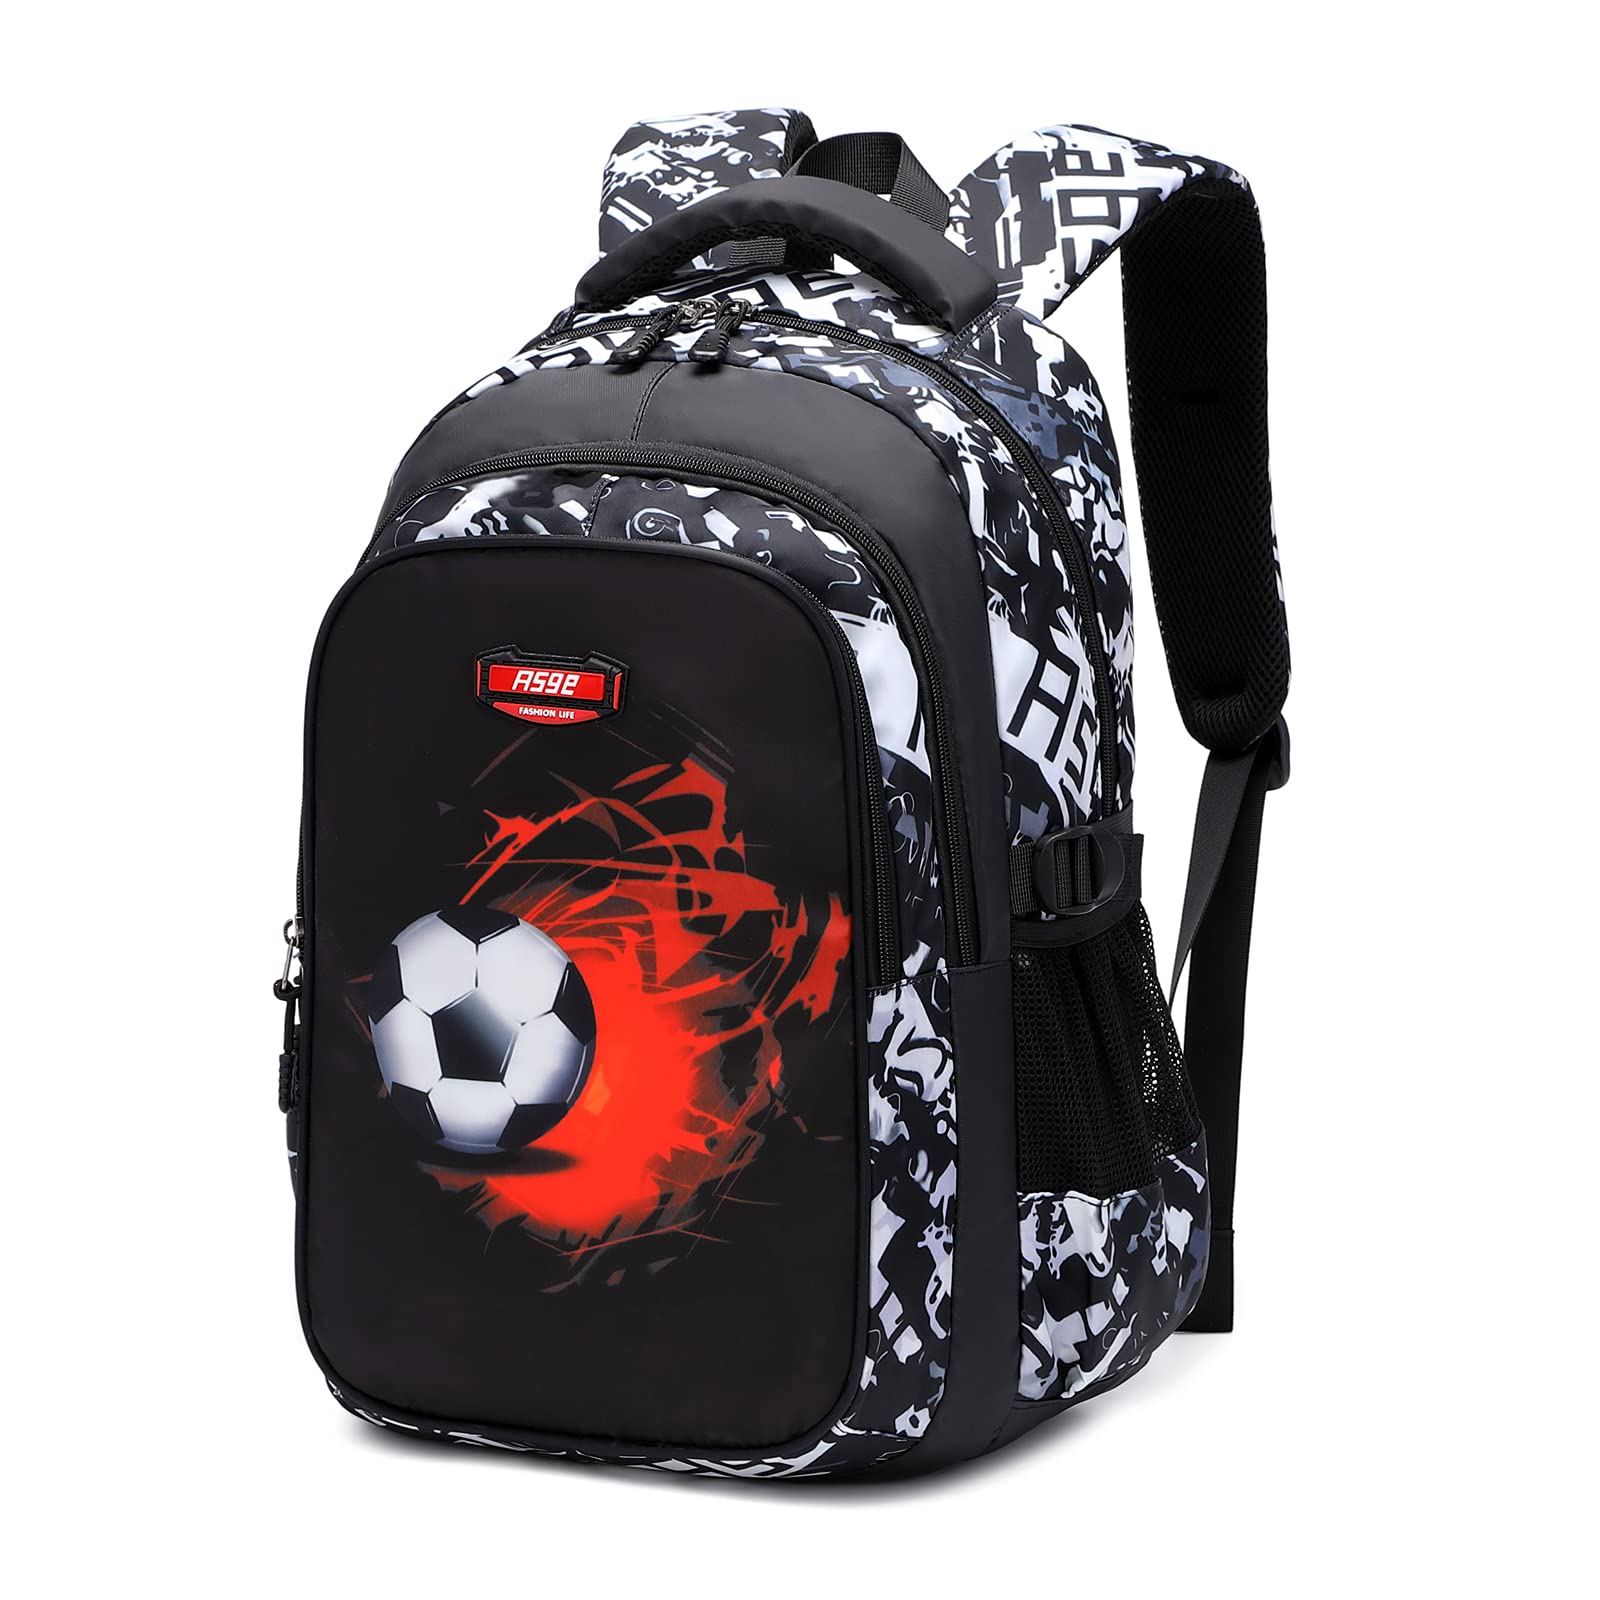 High School Students University Sling Bag Shoulder Bag Casual Bag Men Geo Graphic Crossbody Bag Fashion Adjustable Printed Shoulder Bag for Daily